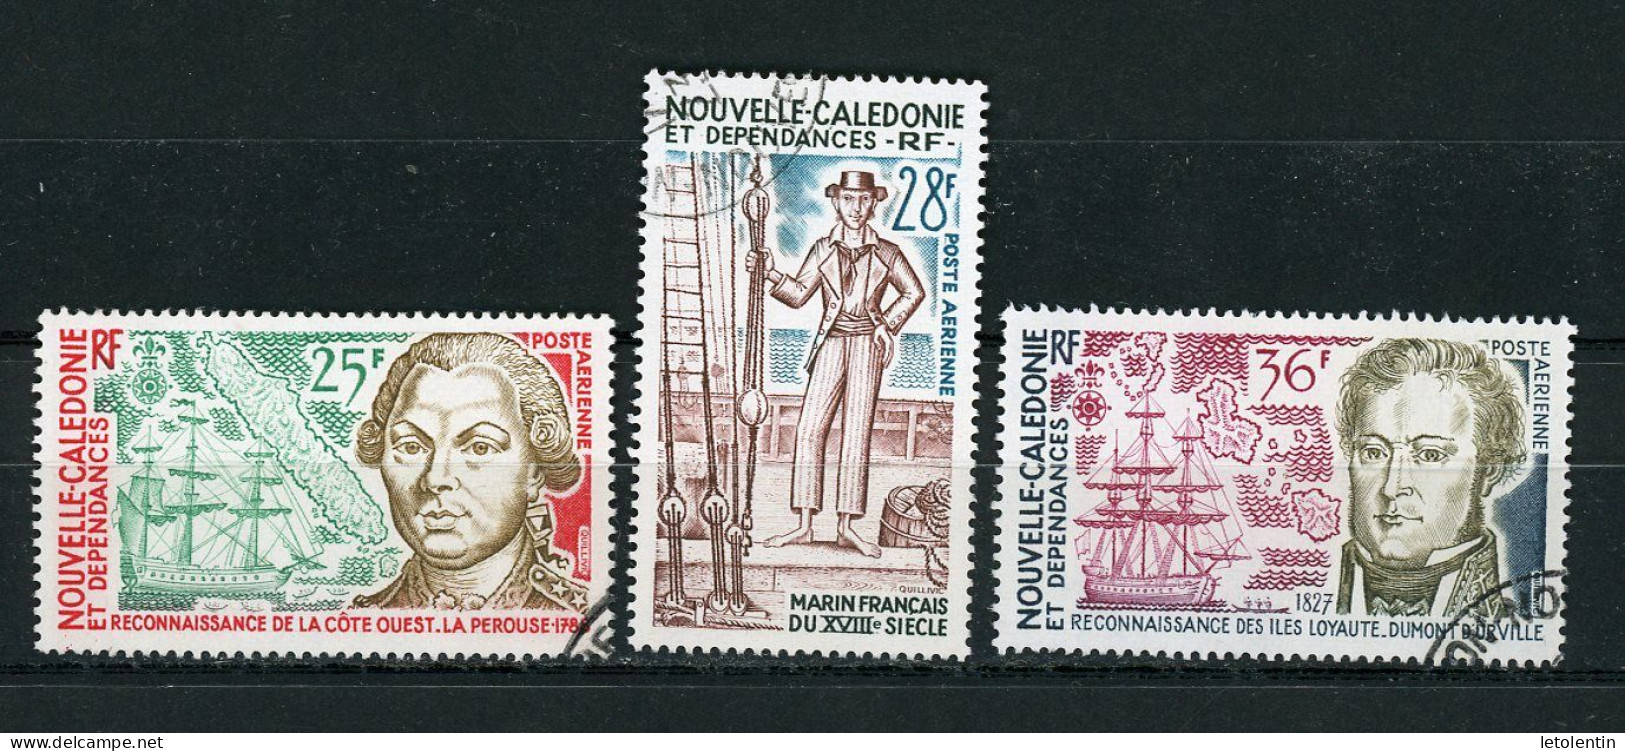 NOUVELLE-CALEDONIE RF - ANNI DE LA DECOUVERTE DE L'ILE - P.A. - N°Yt 155+156+158 Obli. - Used Stamps